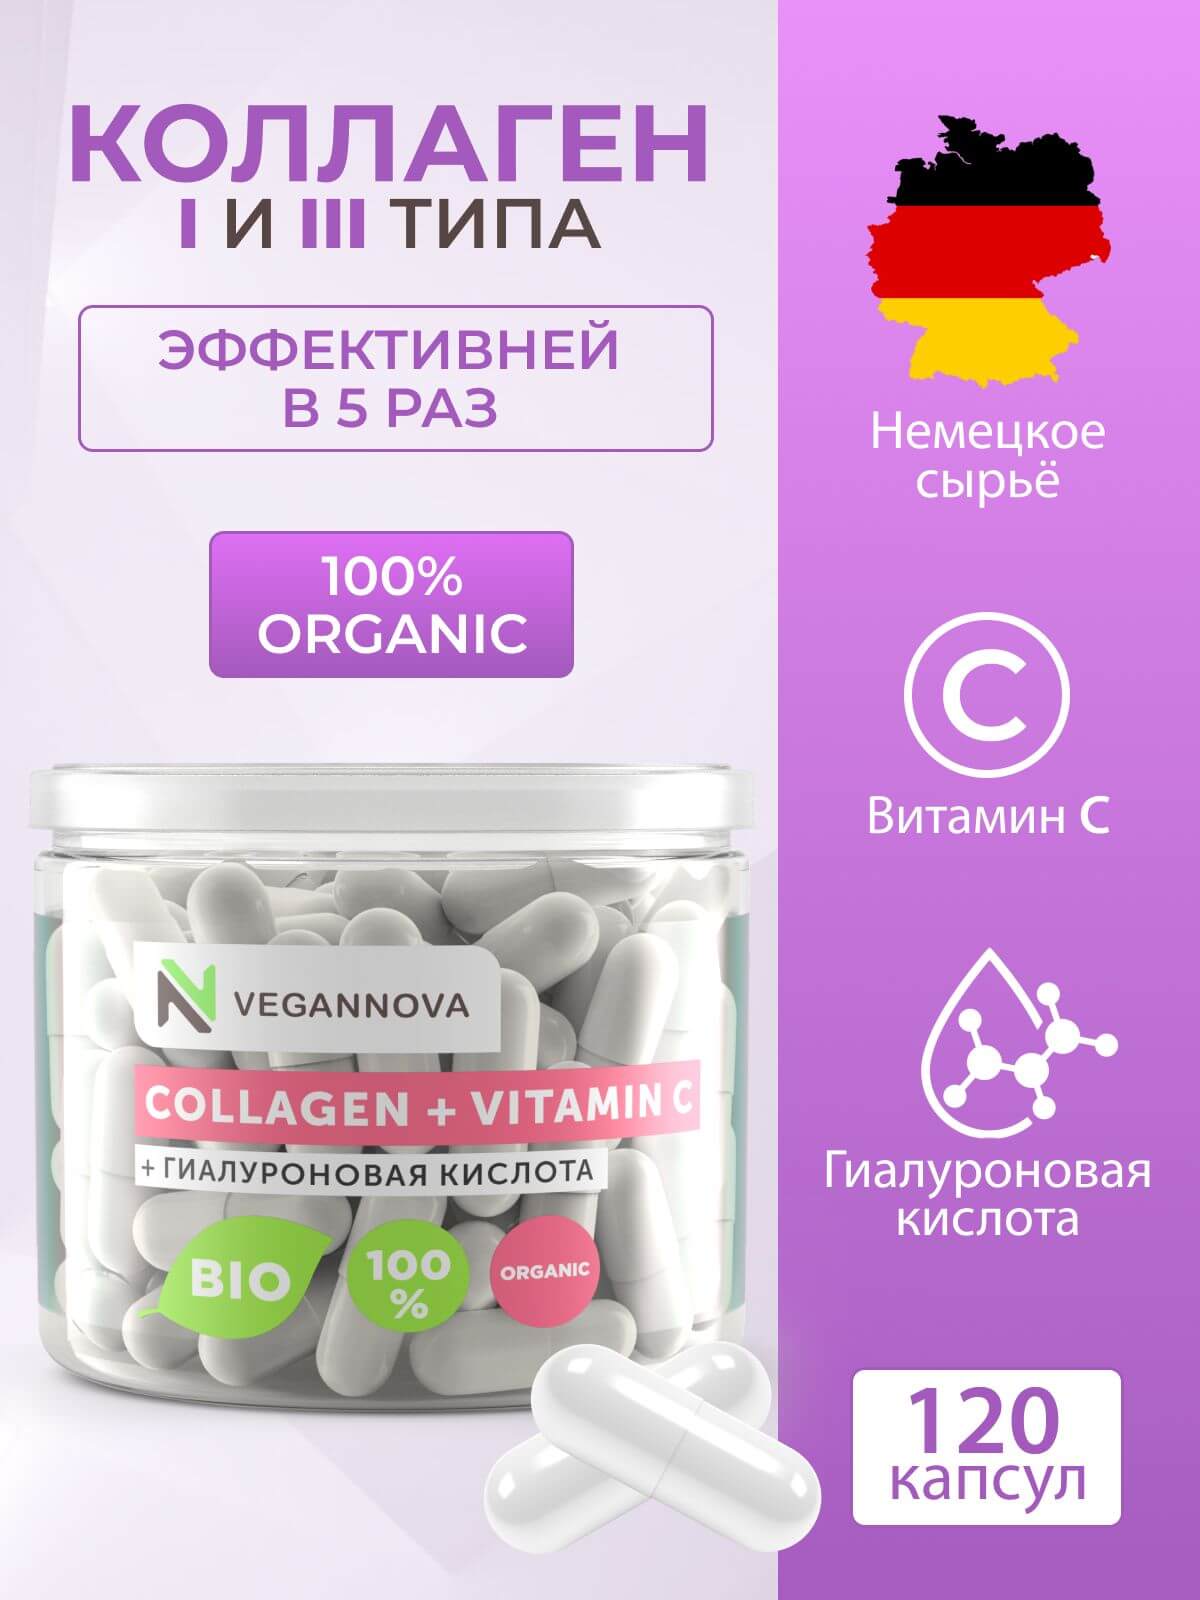 VeganNova Коллаген говяжий 1 и 3 типа с гиалуроновой кислотой и витамином С, для волос, лица, суставов и связок, 120 капсул